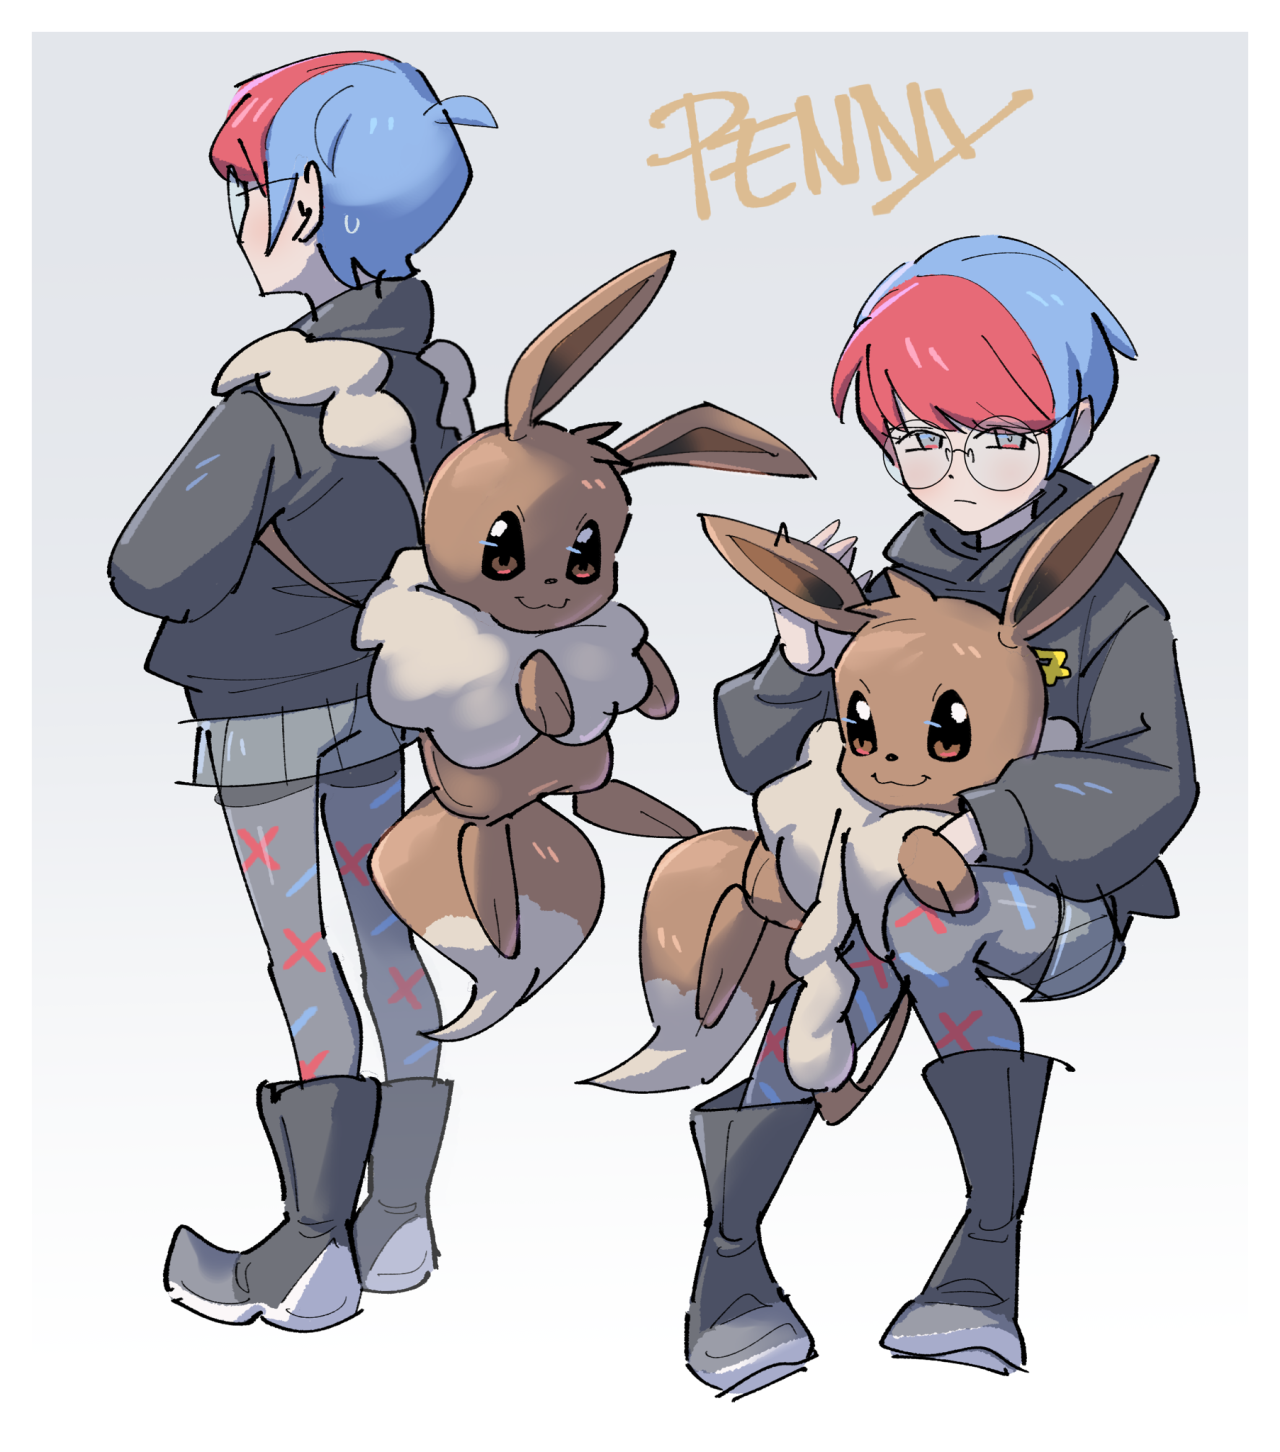 The Eevee Project - Penny pokemon scarlet & Violet fanart 💕 Source:   💚Leafeon  Demmy💚